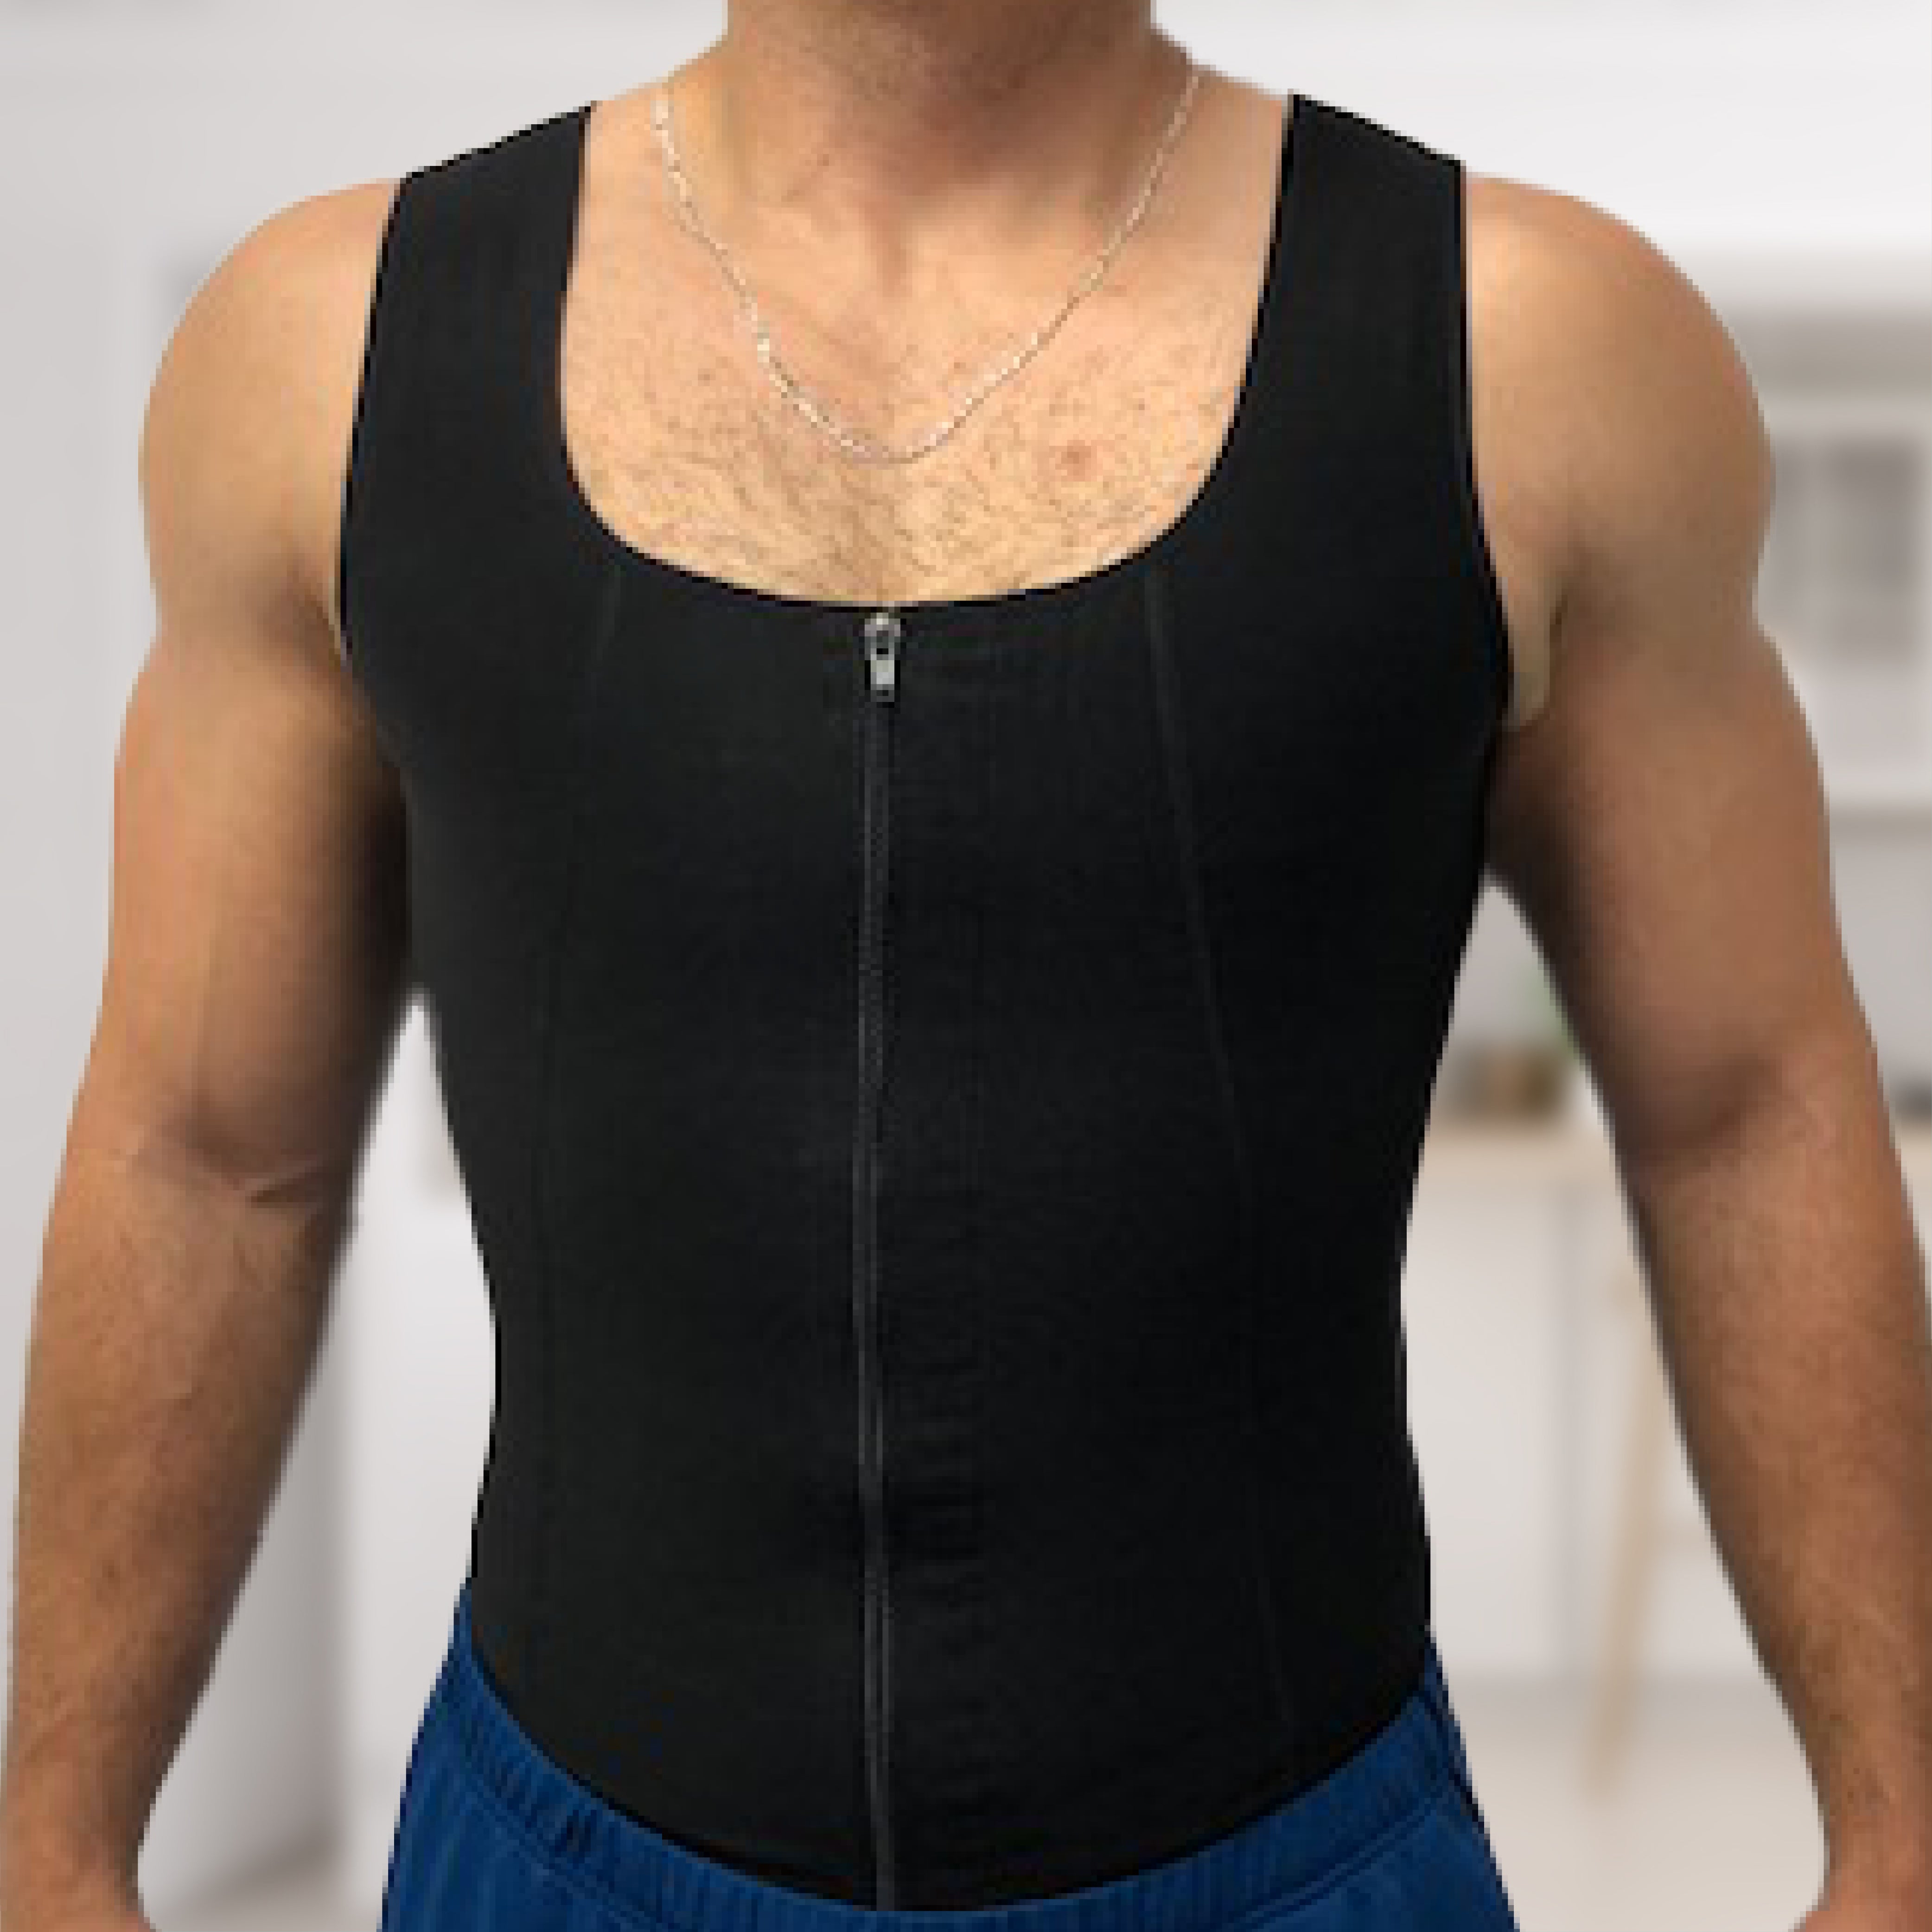 Dr. Shapes Men's Compression Vest